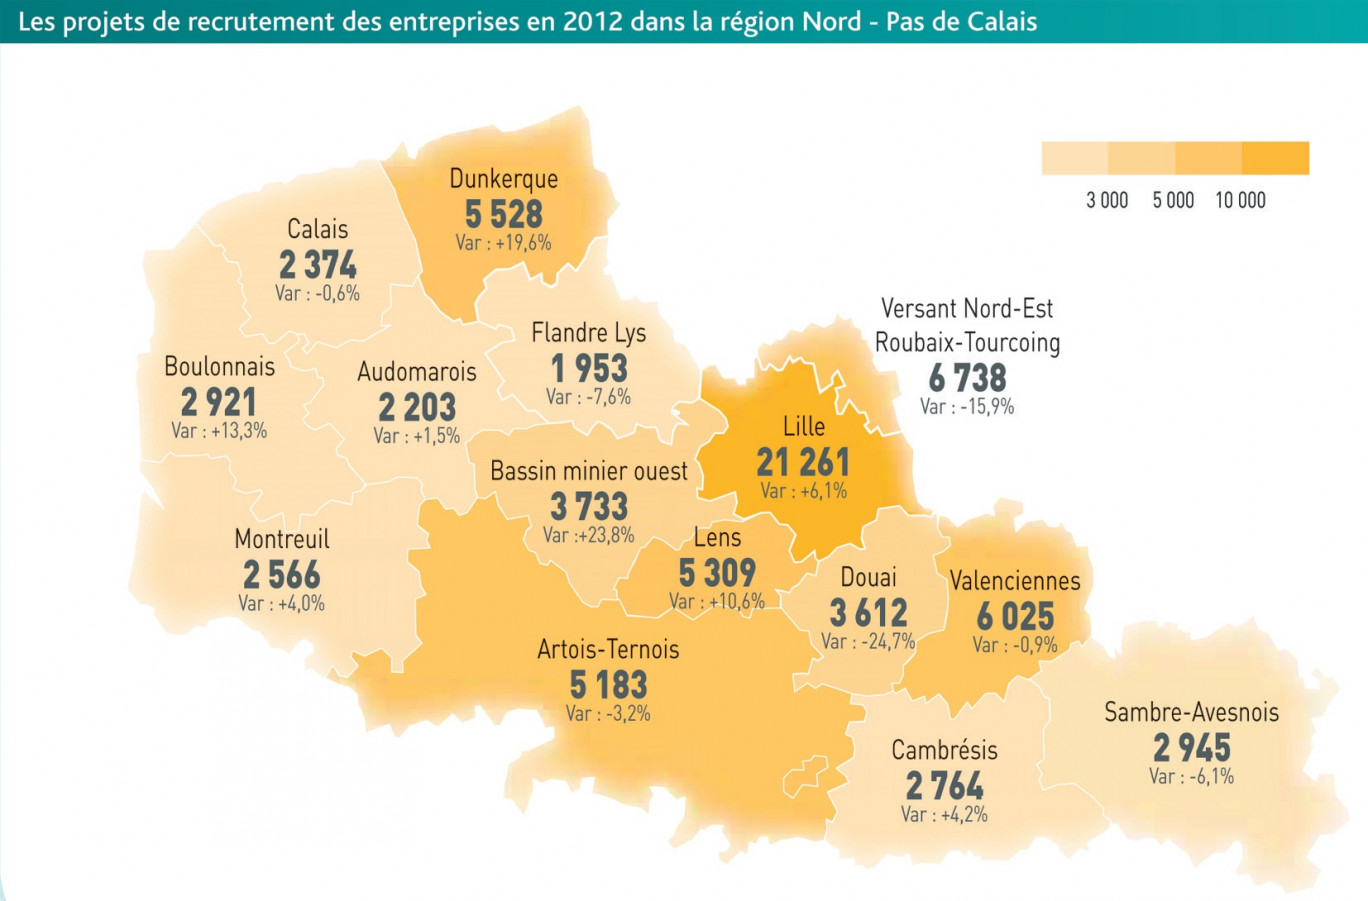 Les projets de recrutement des entreprises en 2012 dans la région Nord-Pas-de-Calais.